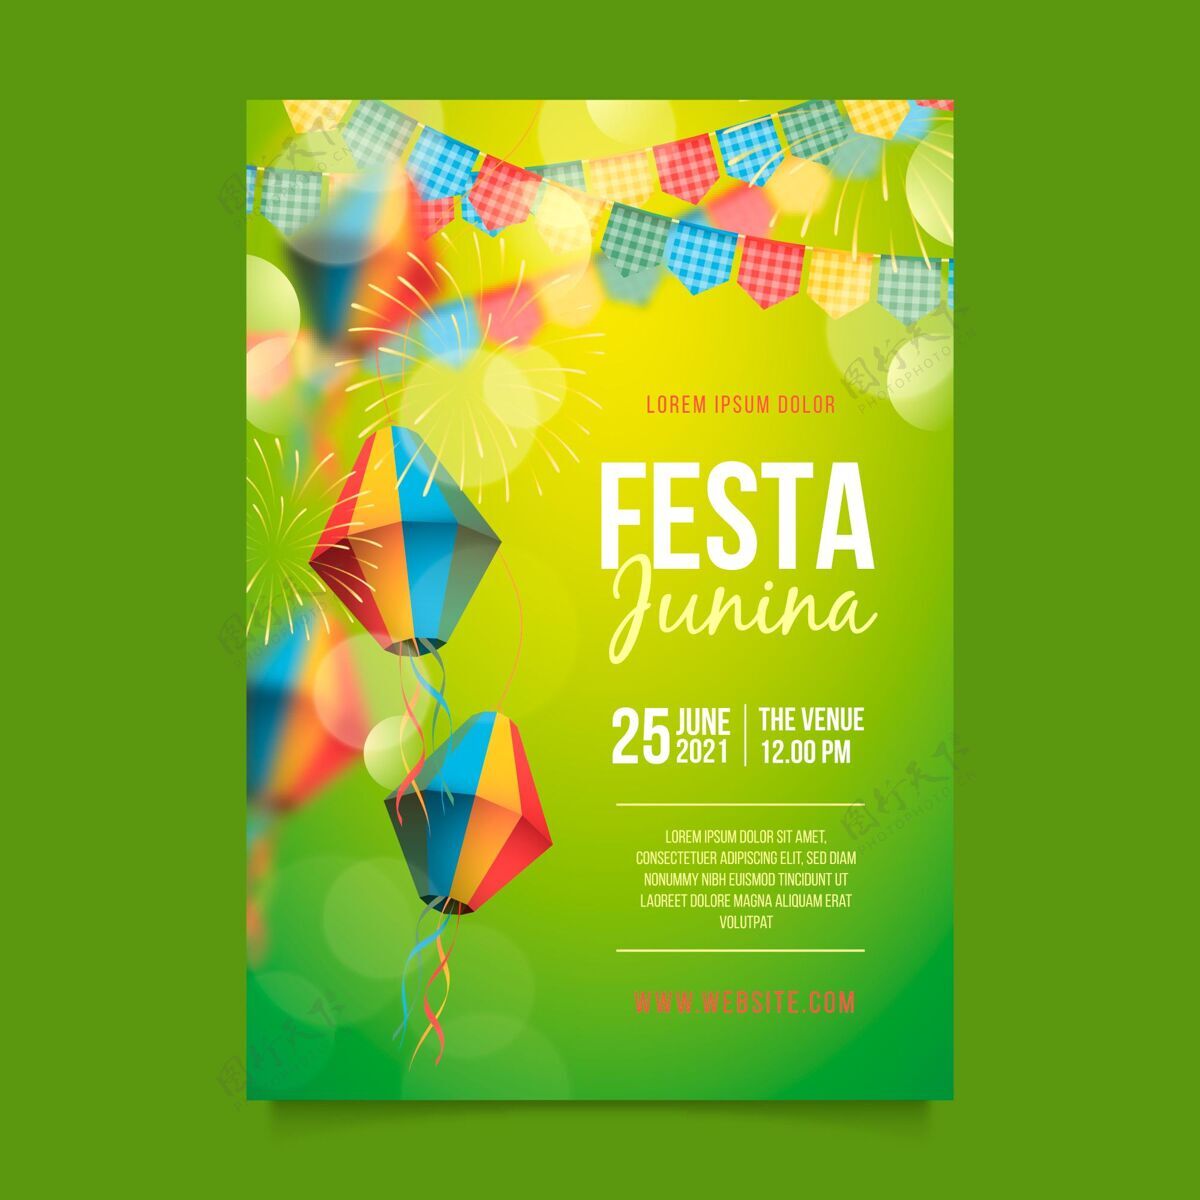 传统现实的festajunina垂直海报模板准备印刷Festadesaojoao收获